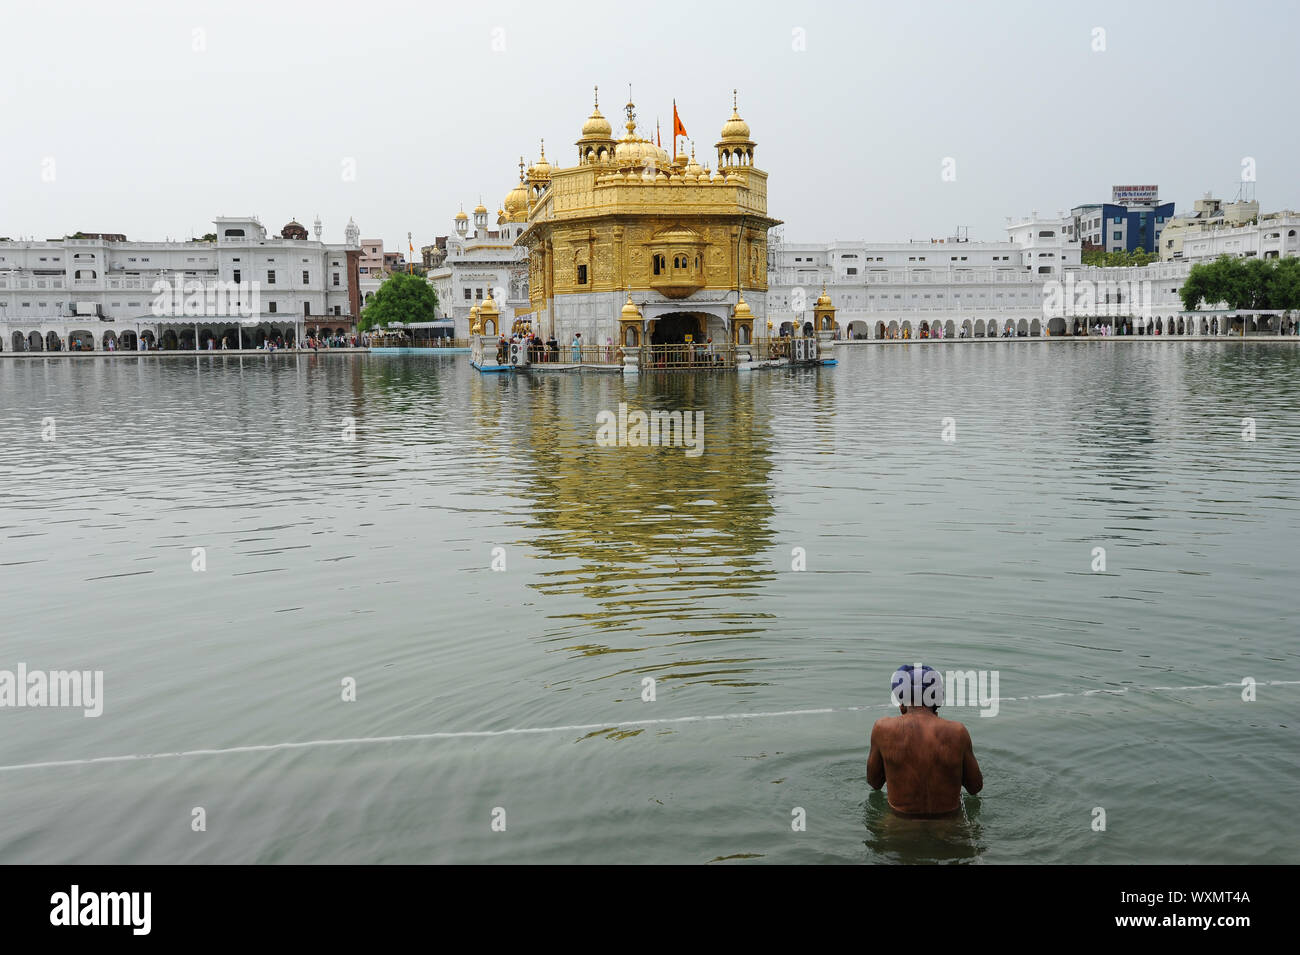 22.07.2011, Amritsar, Punjab, India - un dévot Sikh Amrit la baigne dans Sarover (bassin sacré) au temple d'Or, le plus sacré des lieux de culte. Banque D'Images